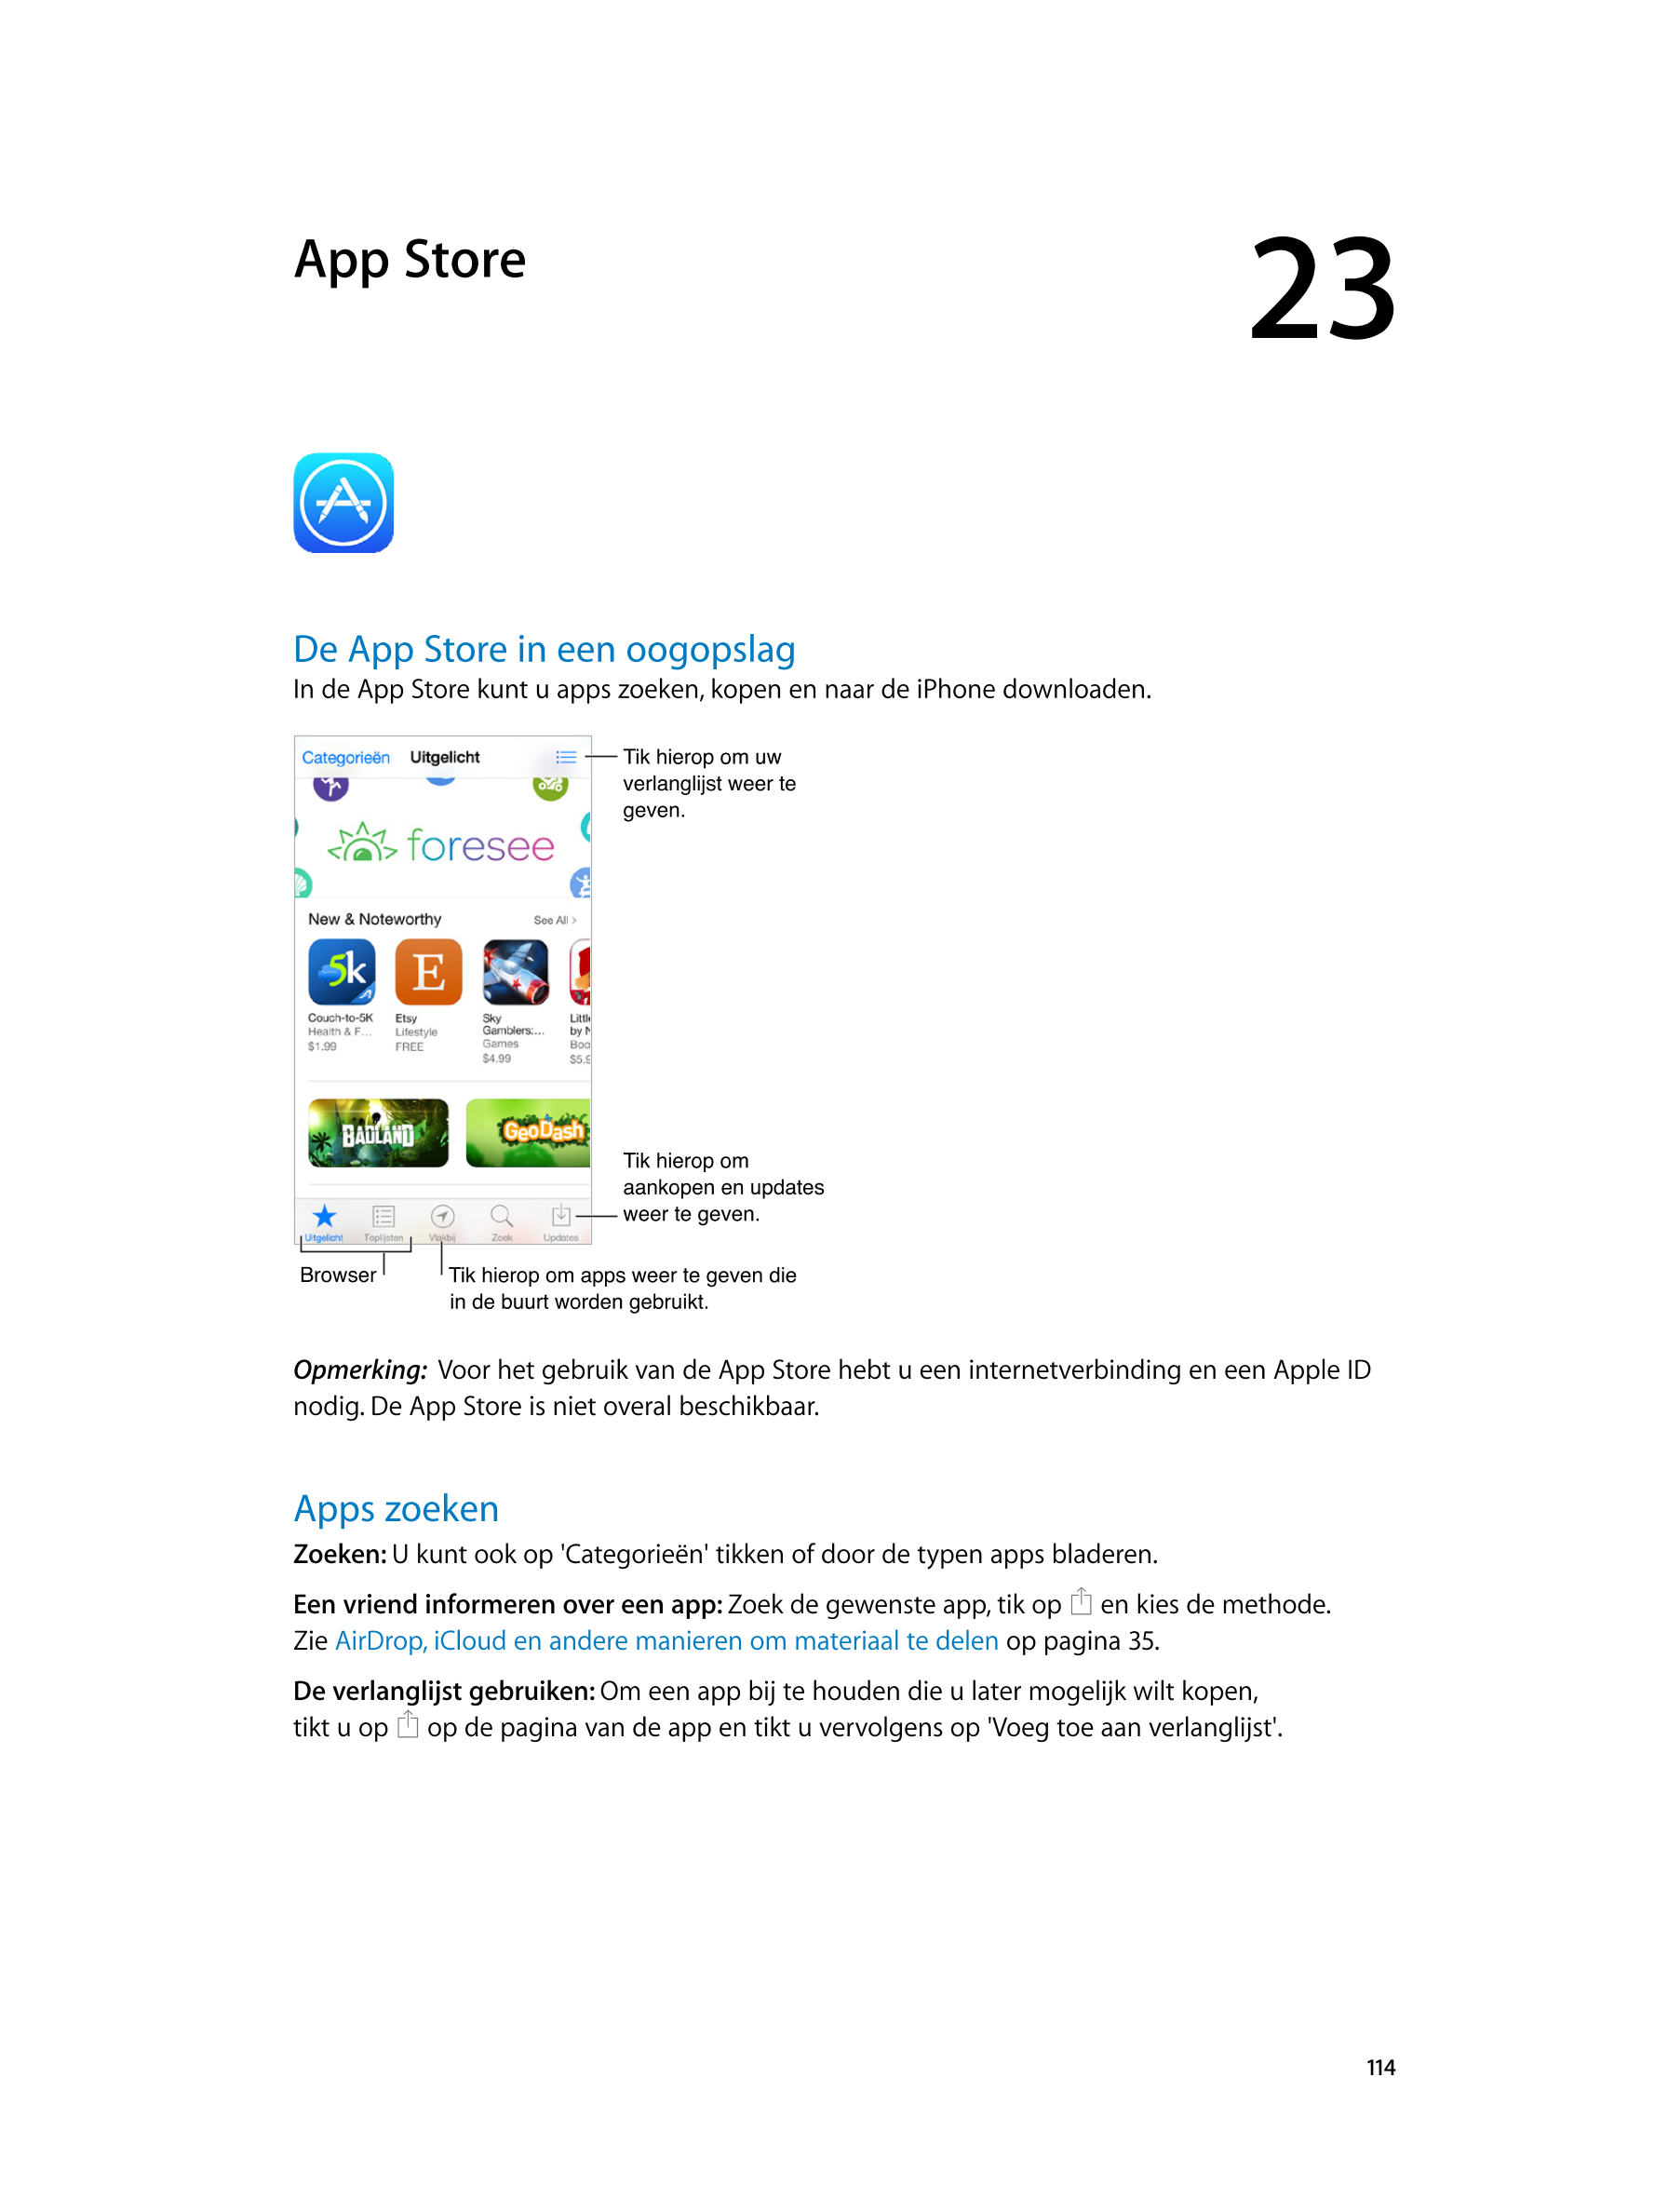   App Store 23
De App Store in een oogopslag
In de App Store kunt u apps zoeken, kopen en naar de iPhone downloaden.
Tik hierop 